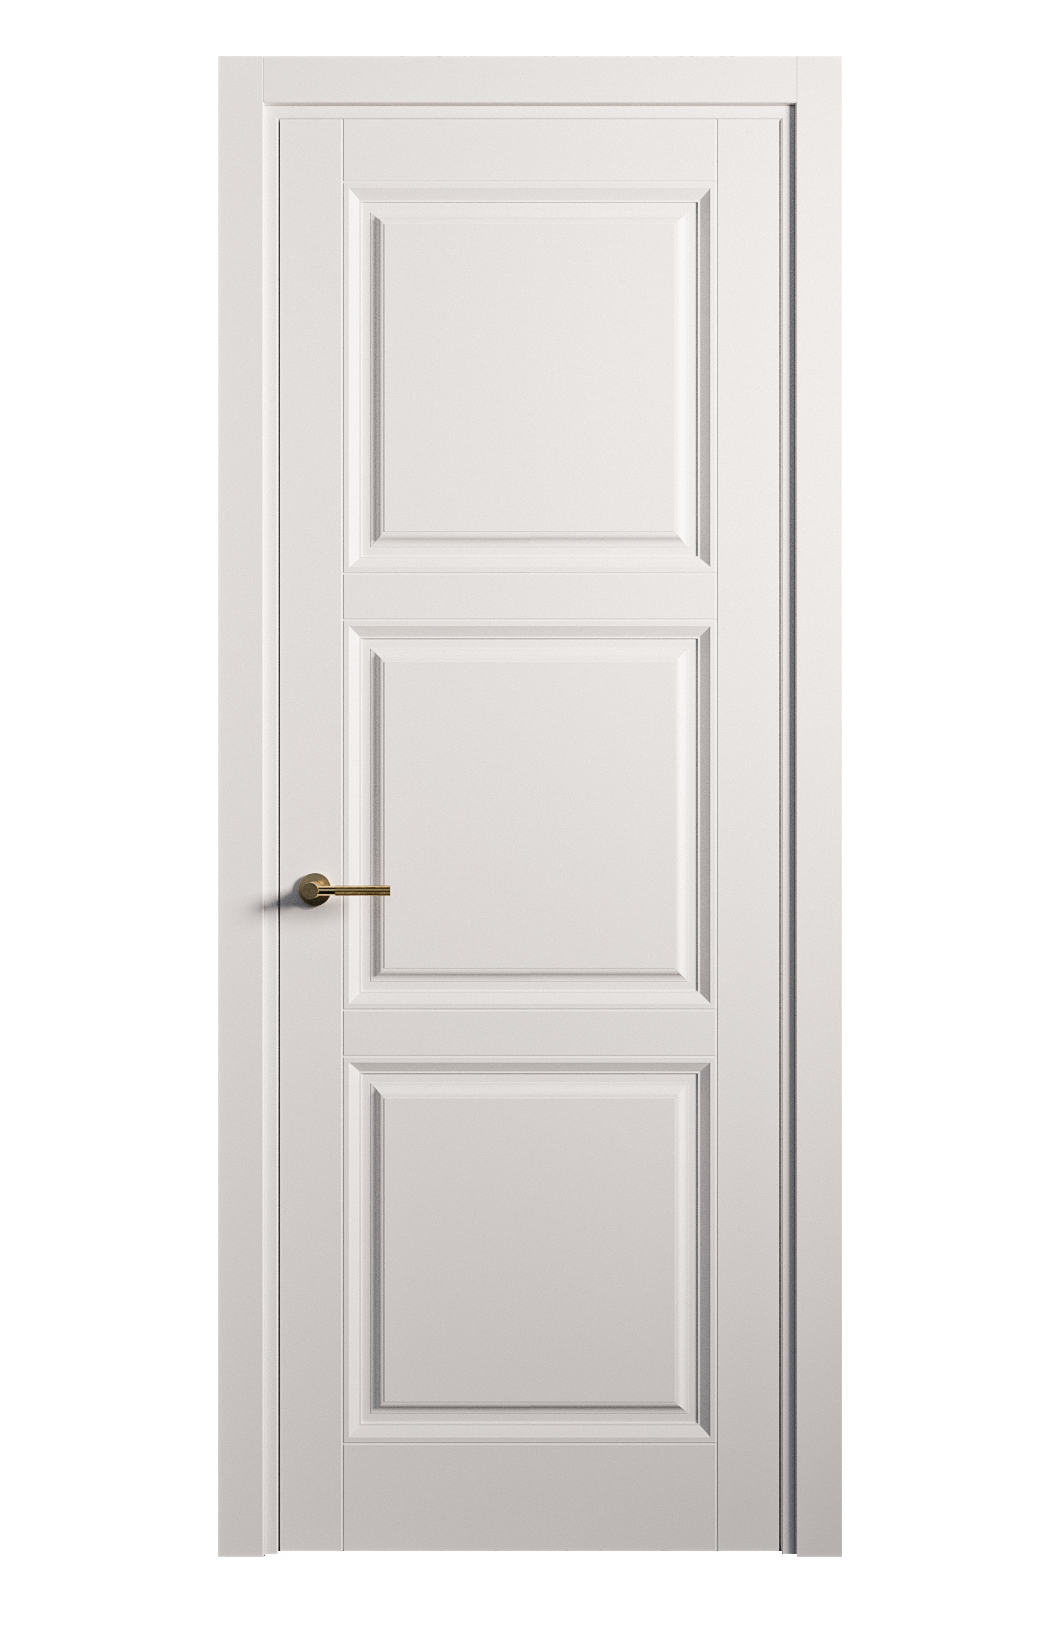 Межкомнатная дверь Venezia-3 глухая эмаль ral 9003 25779